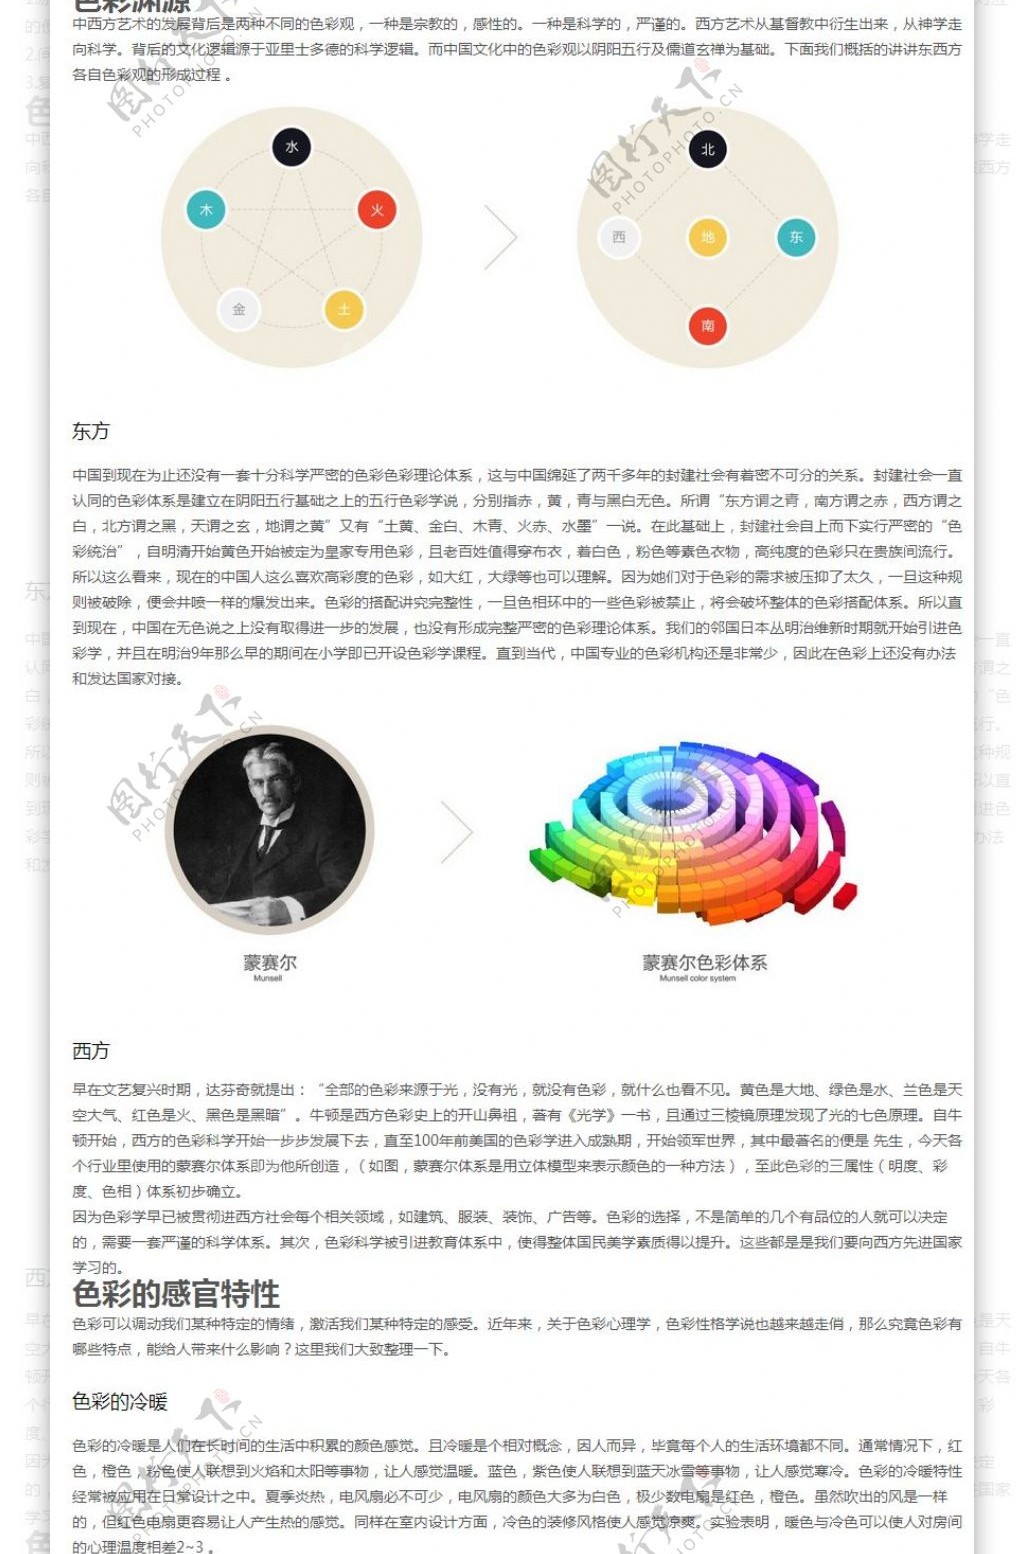 设计色彩色彩浅析手机界面设计手机UI设计手机图标设计UI设计教程GUImobile莫贝网